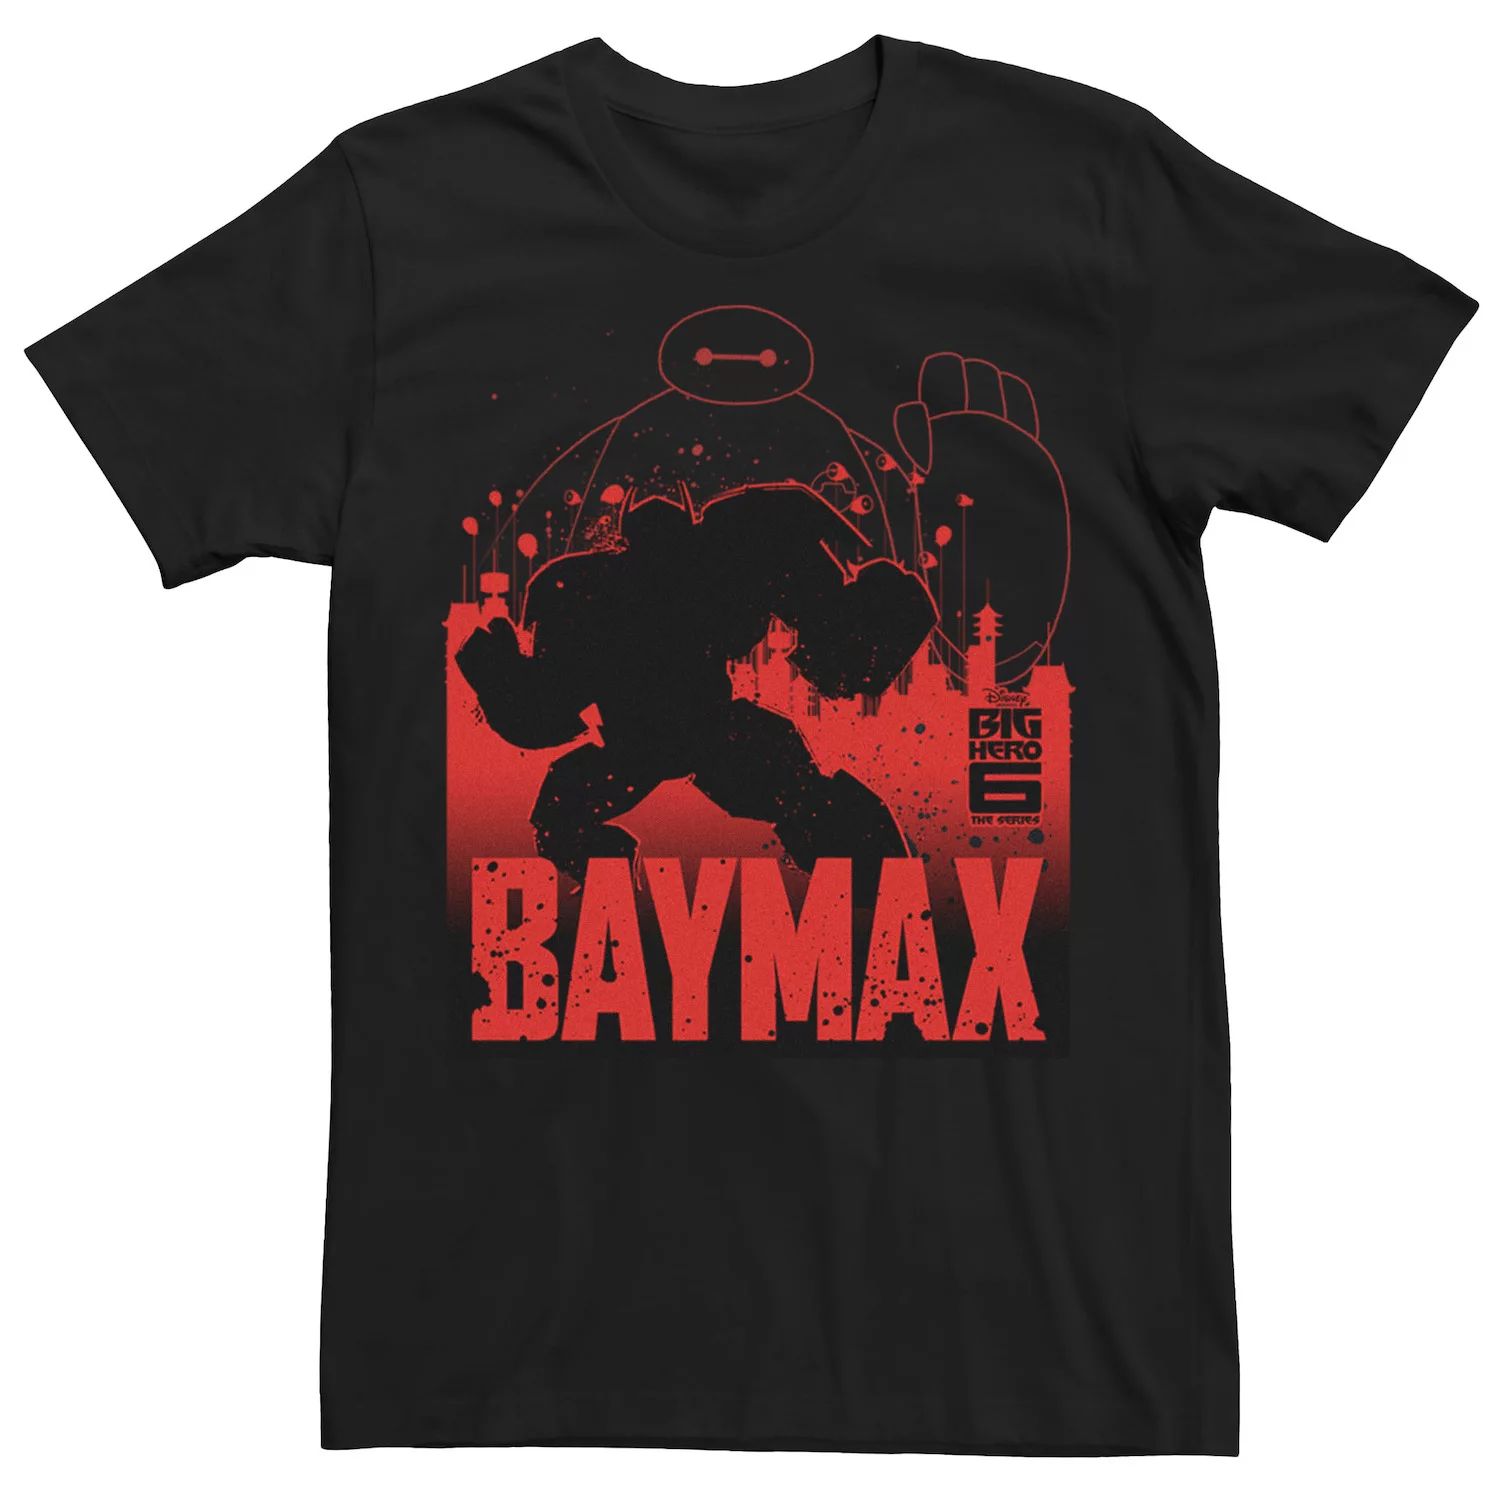 Мужская футболка с контуром Baymax из сериала Big Hero 6 Disney